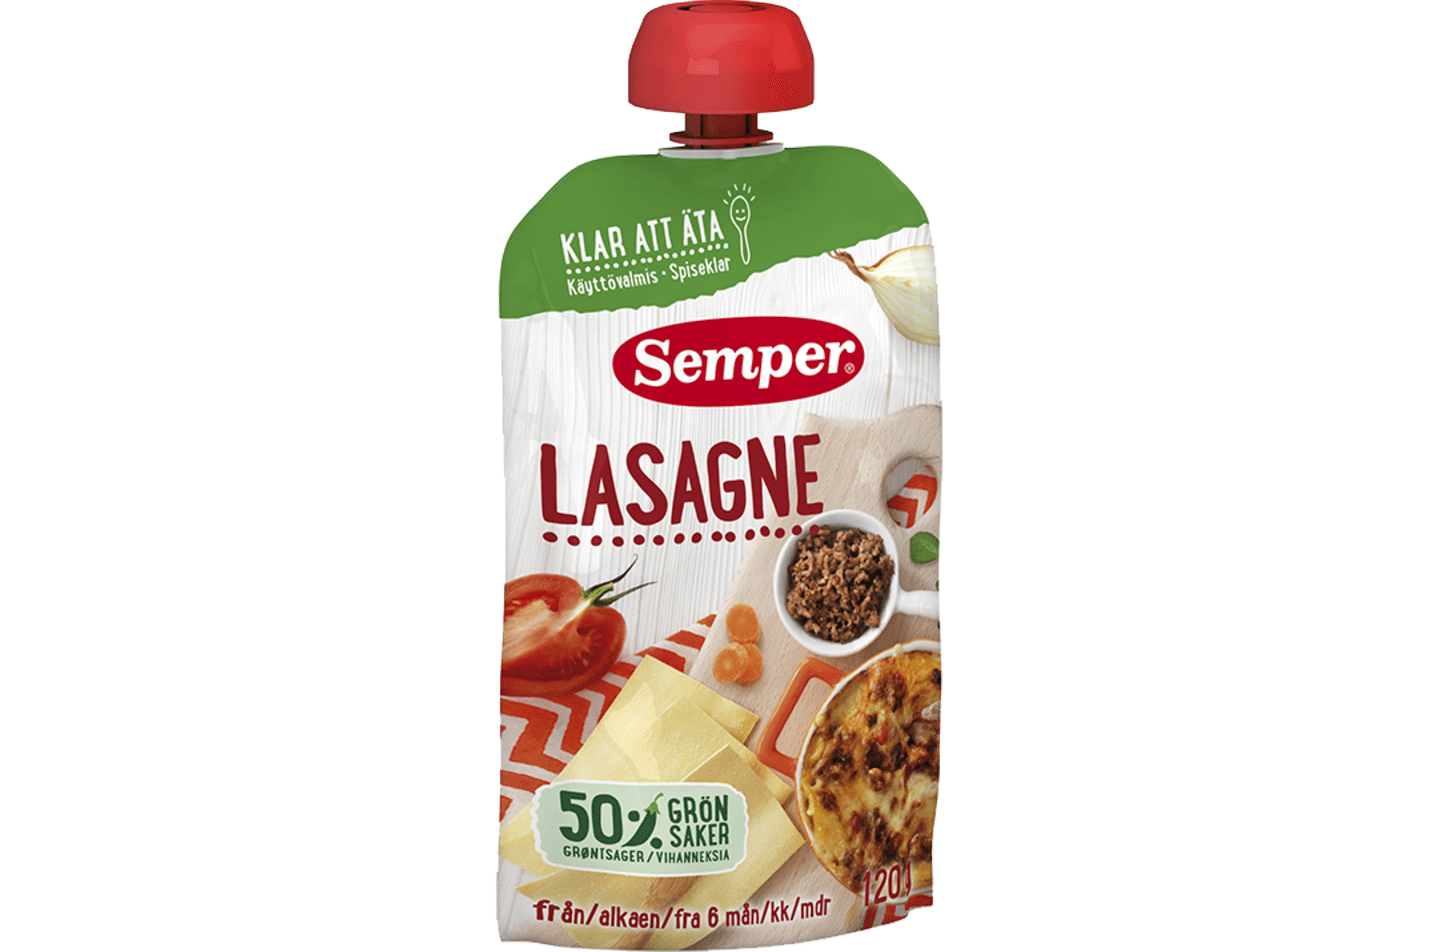 Lasagne i klämpåse från Semper Barnmat